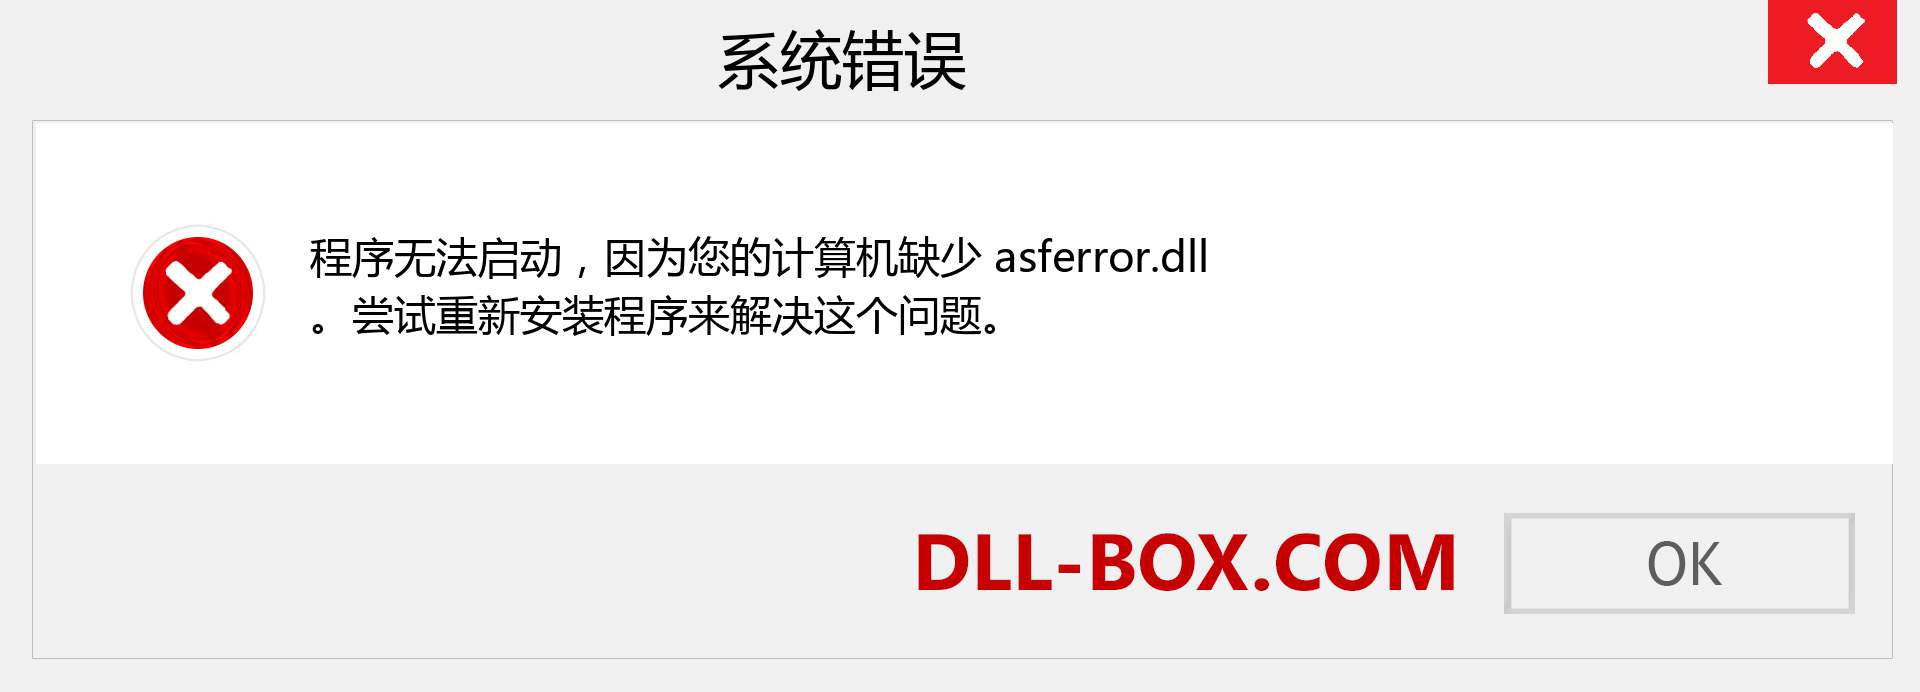 asferror.dll 文件丢失？。 适用于 Windows 7、8、10 的下载 - 修复 Windows、照片、图像上的 asferror dll 丢失错误